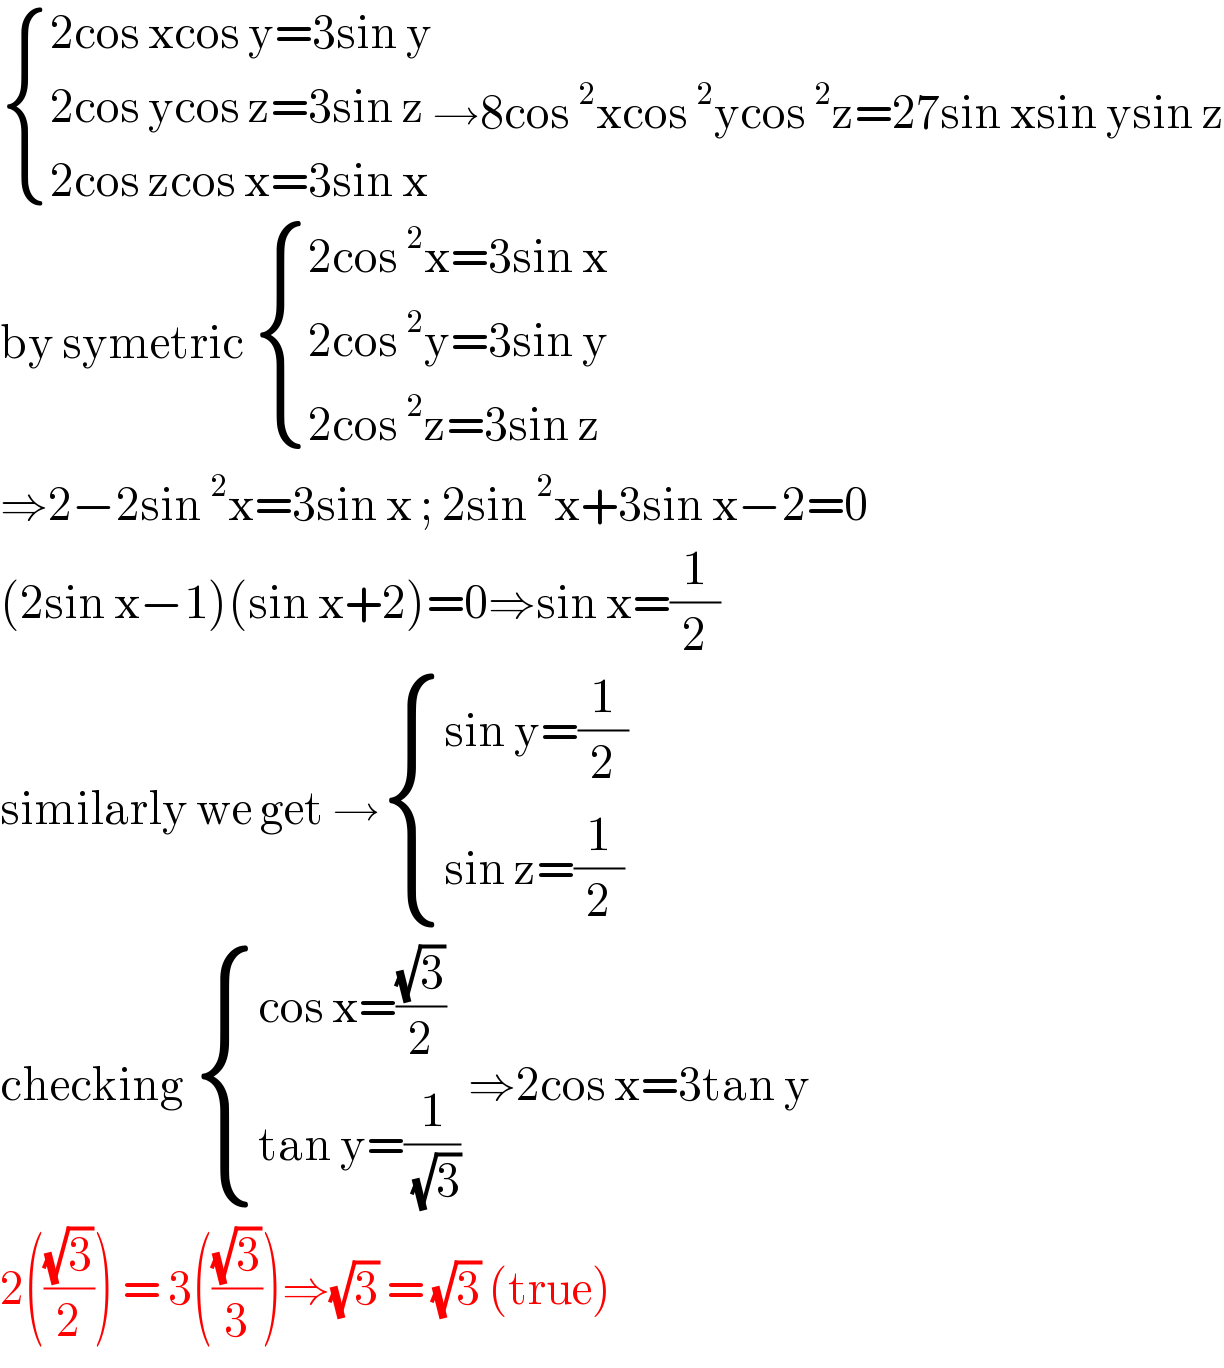  { ((2cos xcos y=3sin y)),((2cos ycos z=3sin z)),((2cos zcos x=3sin x)) :}→8cos^2 xcos^2 ycos^2 z=27sin xsin ysin z  by symetric  { ((2cos^2 x=3sin x)),((2cos^2 y=3sin y)),((2cos^2 z=3sin z)) :}  ⇒2−2sin^2 x=3sin x ; 2sin^2 x+3sin x−2=0  (2sin x−1)(sin x+2)=0⇒sin x=(1/2)  similarly we get → { ((sin y=(1/2))),((sin z=(1/2))) :}  checking  { ((cos x=((√3)/2))),((tan y=(1/( (√3))))) :} ⇒2cos x=3tan y  2(((√3)/2)) = 3(((√3)/3))⇒(√3) = (√3) (true)  